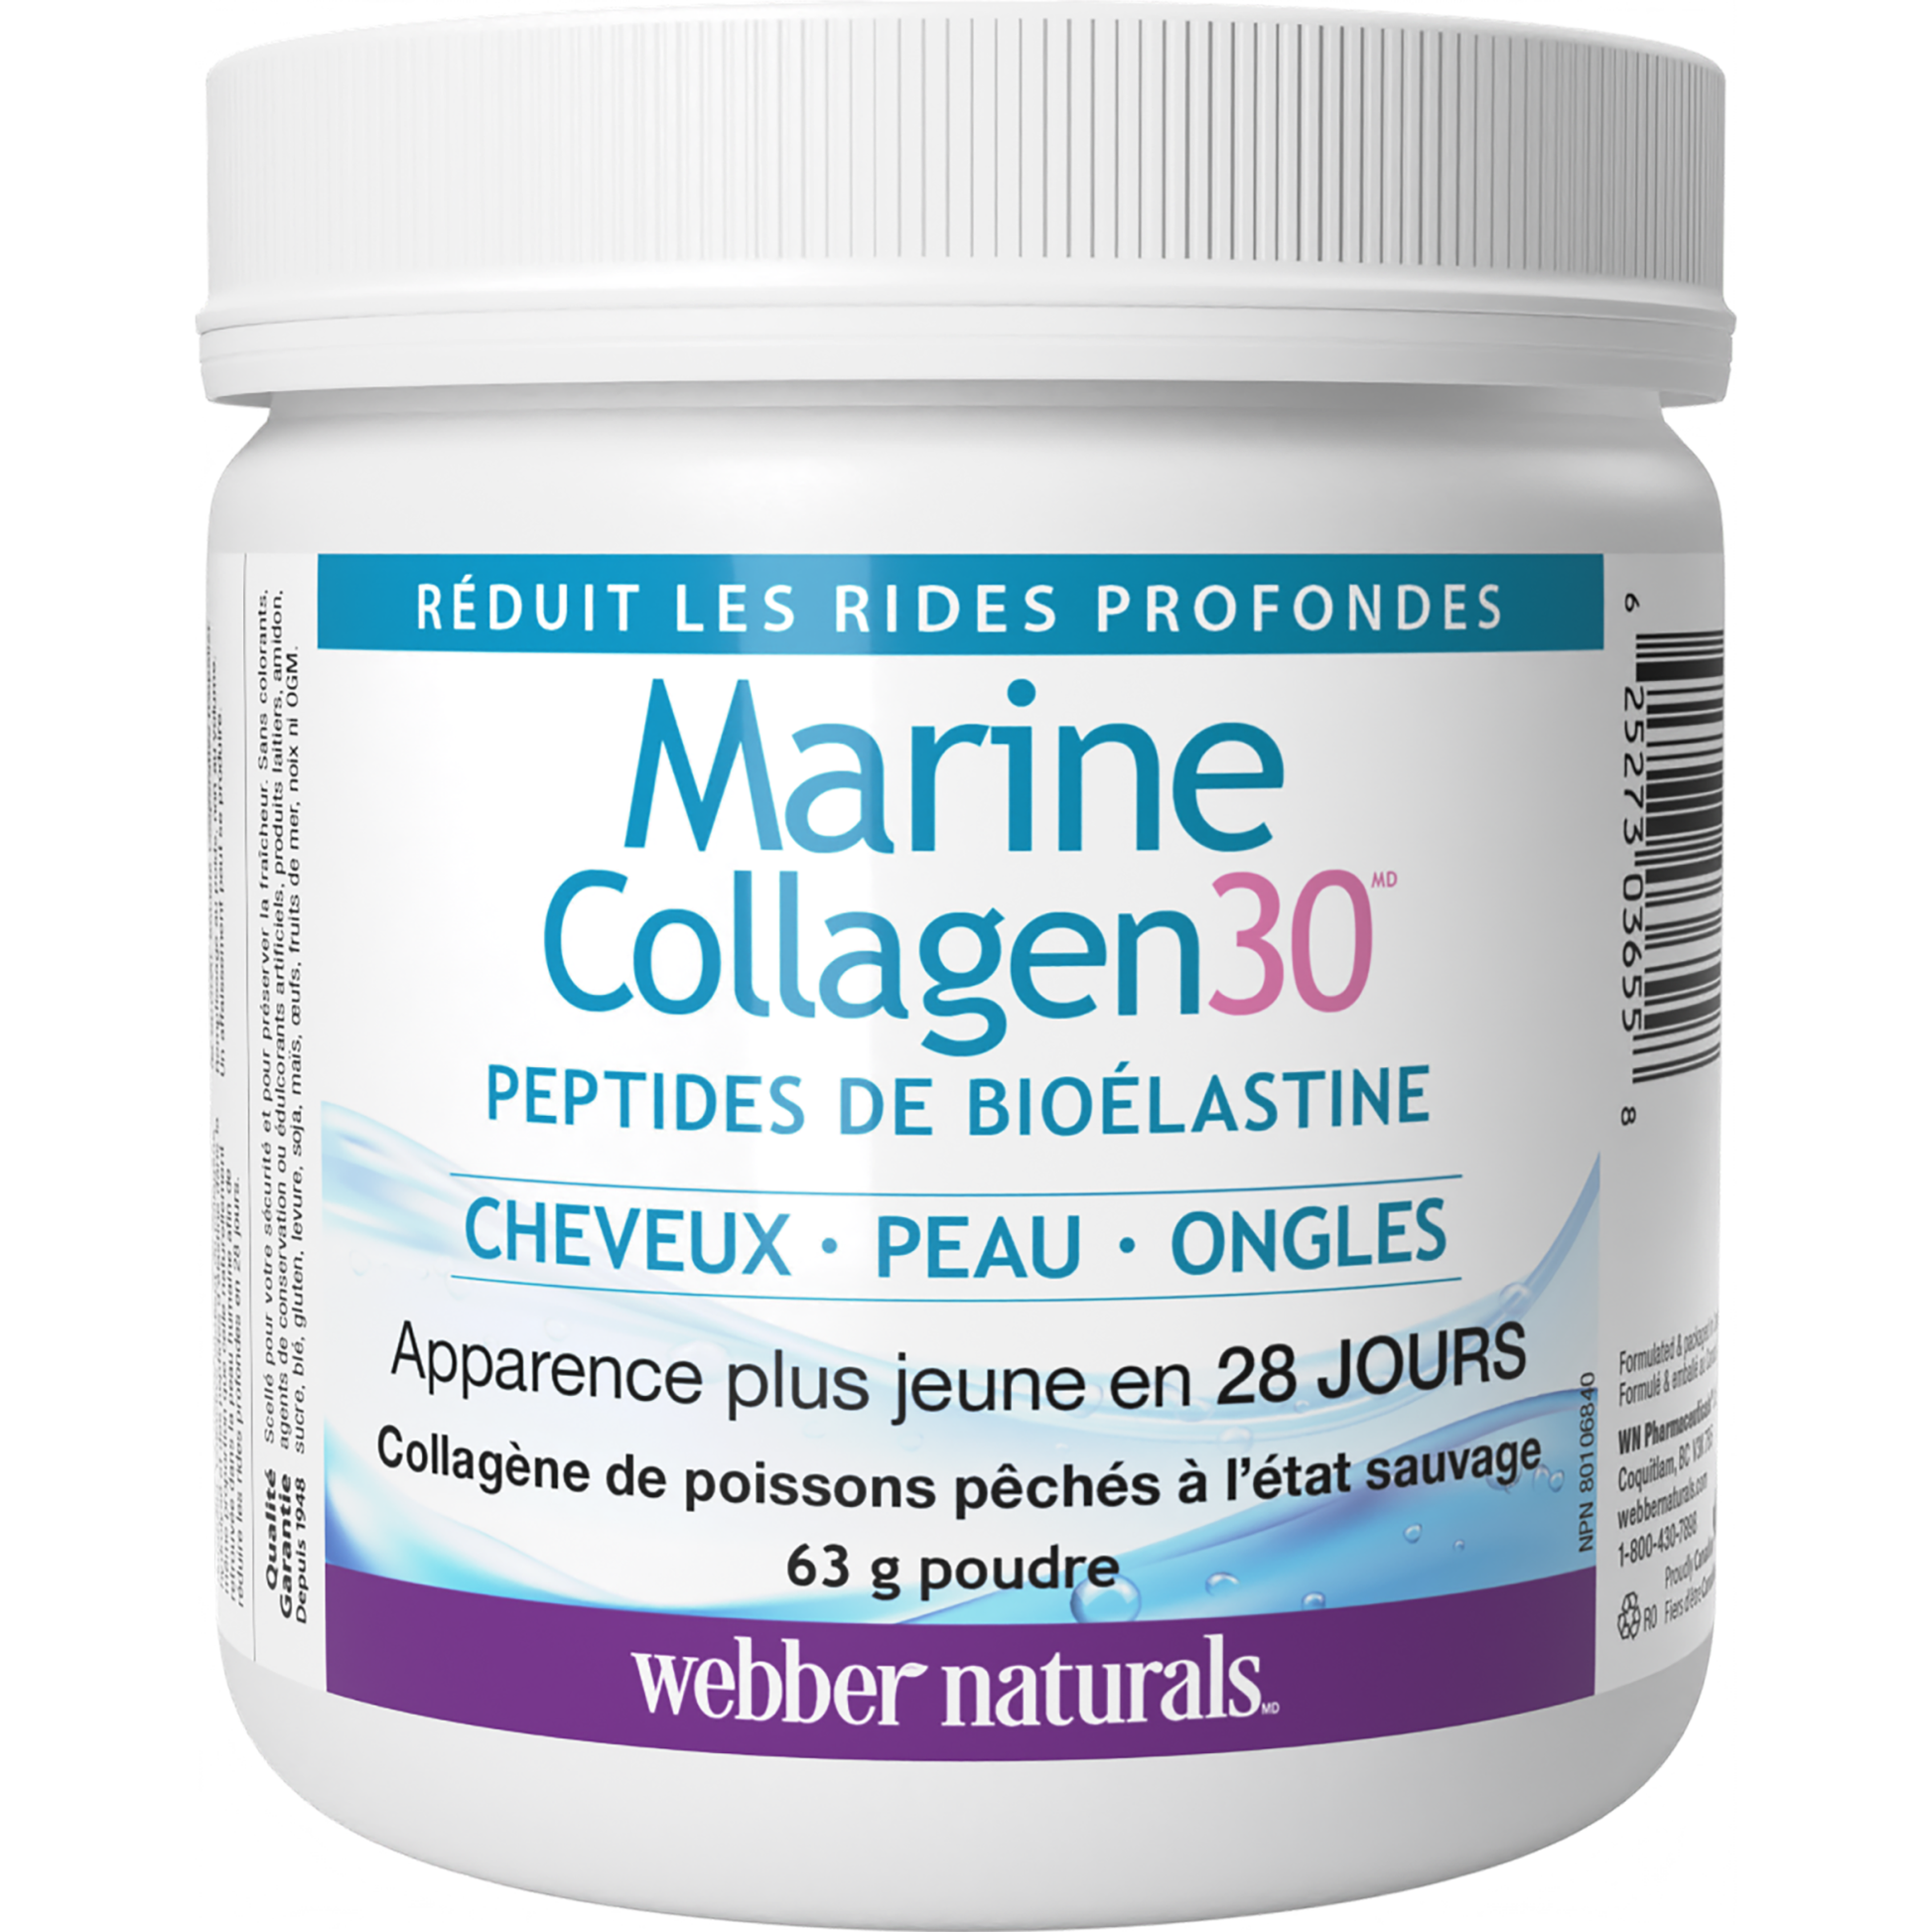 Marine Collagen30(MD) Peptides de bioélastine for Webber Naturals|v|hi-res|WN3655